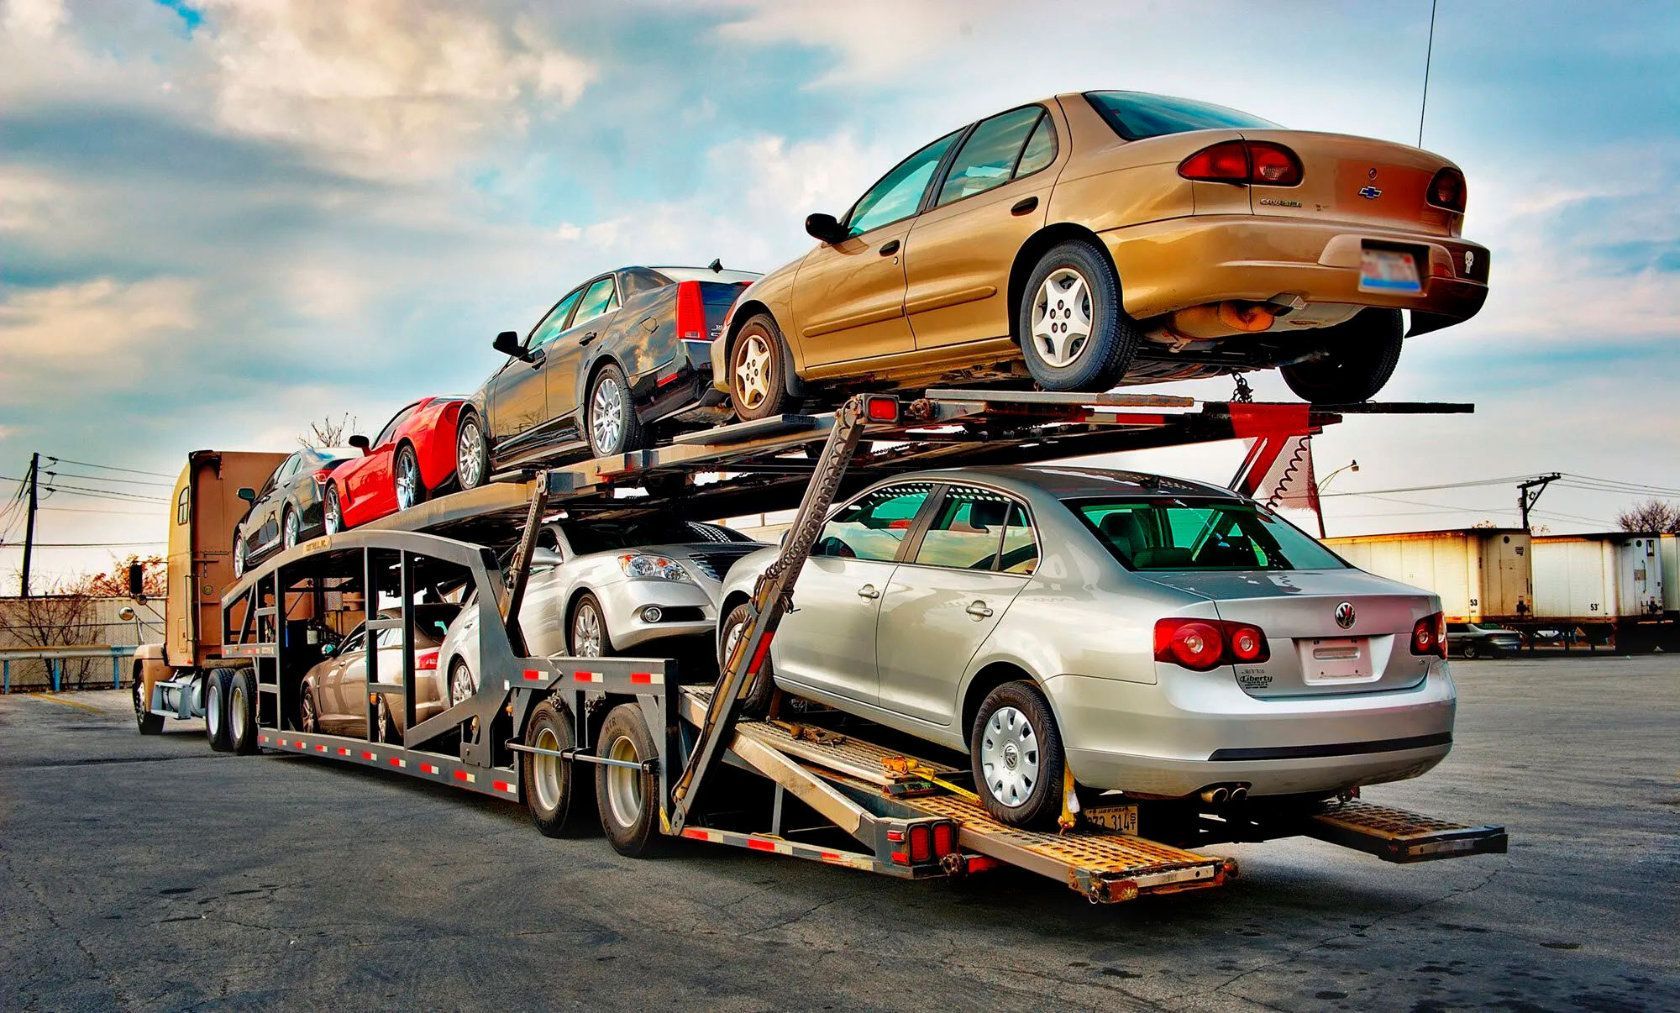 Есть ли гарантия на автомобили, привезенные по параллельному импорту?